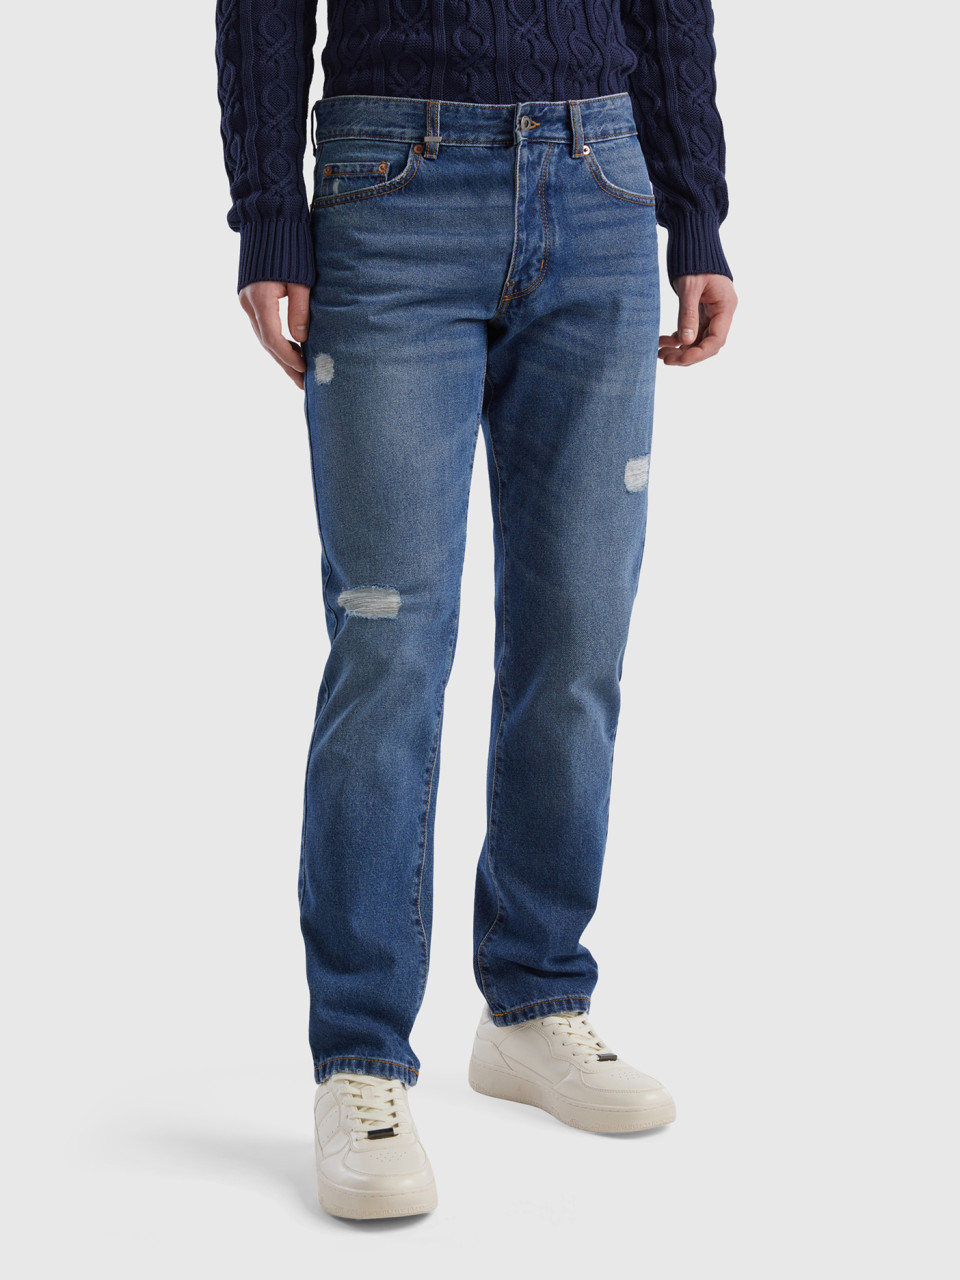 Benetton, Jeans Straight-fit, Hellblau, male